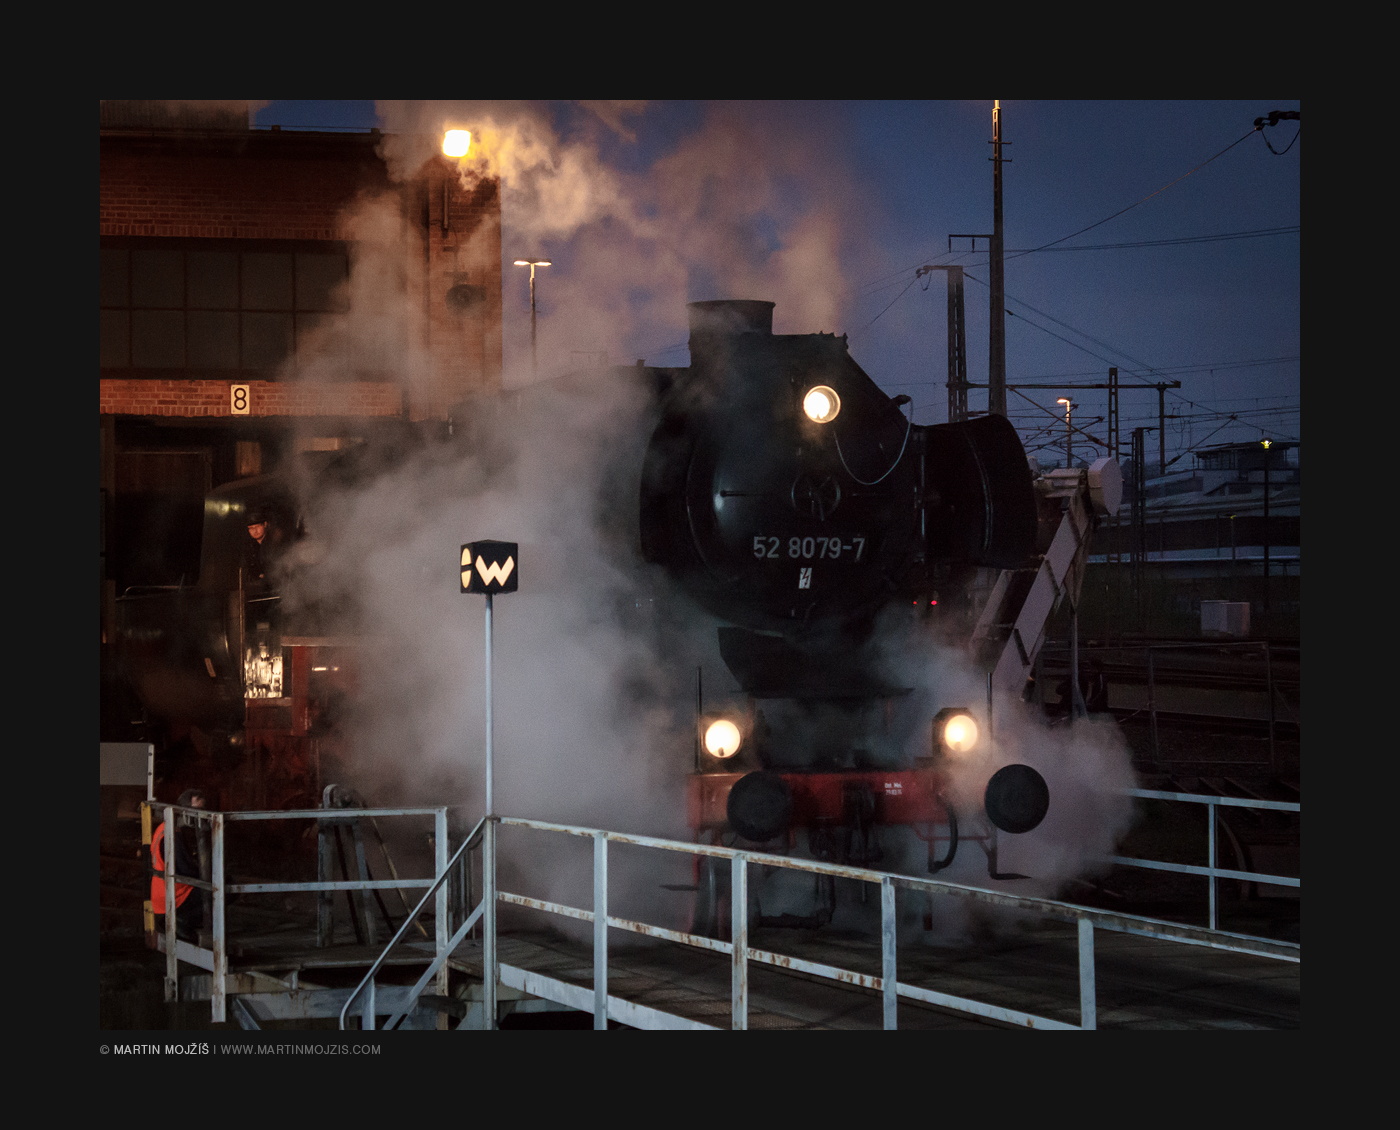 Steam locomotive on a turntable.